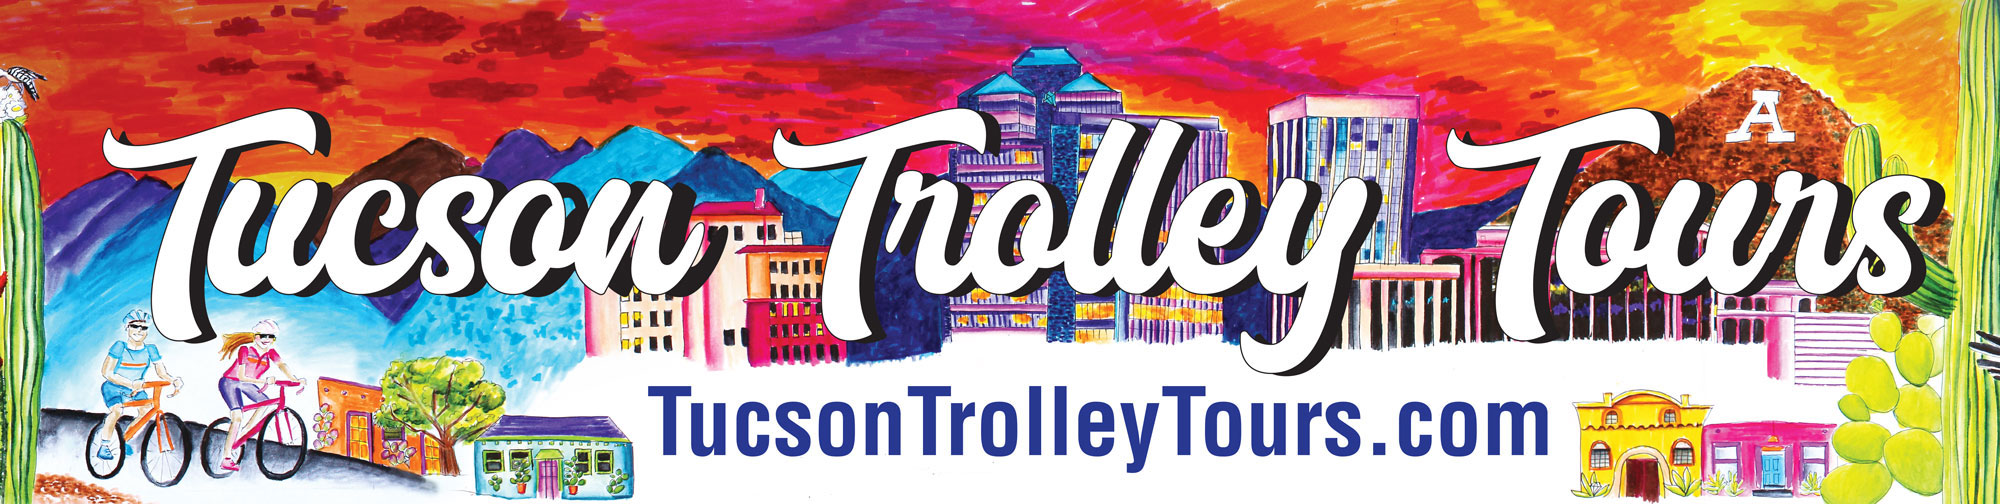 Tucson Trolley Tours